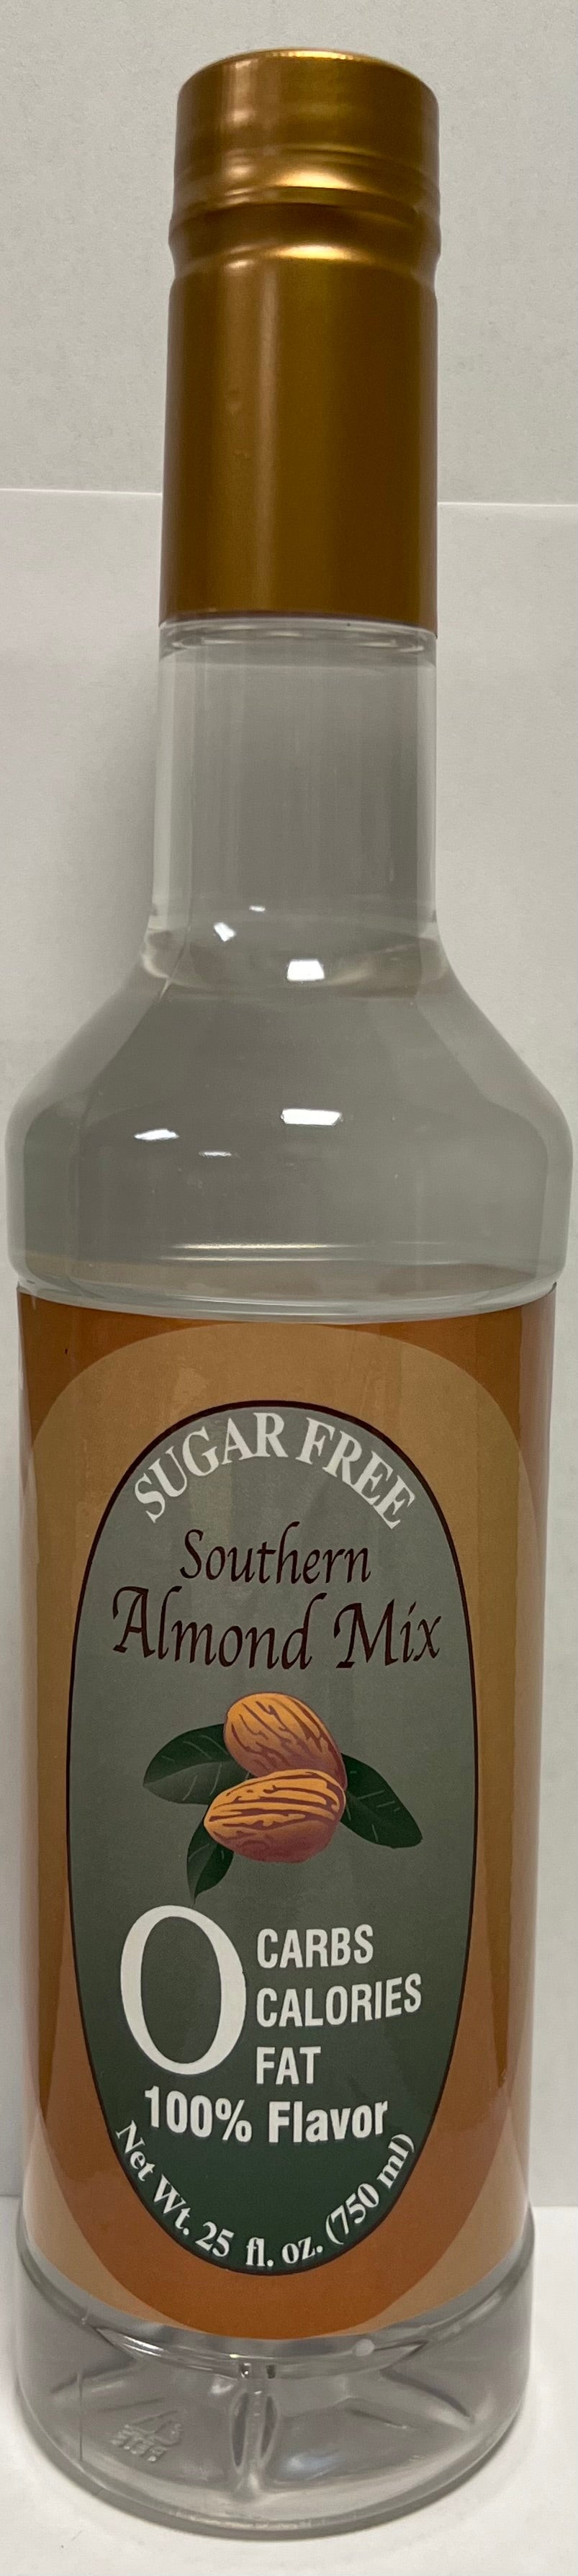 Sugar Free Savannah Almond Flavoring Mix